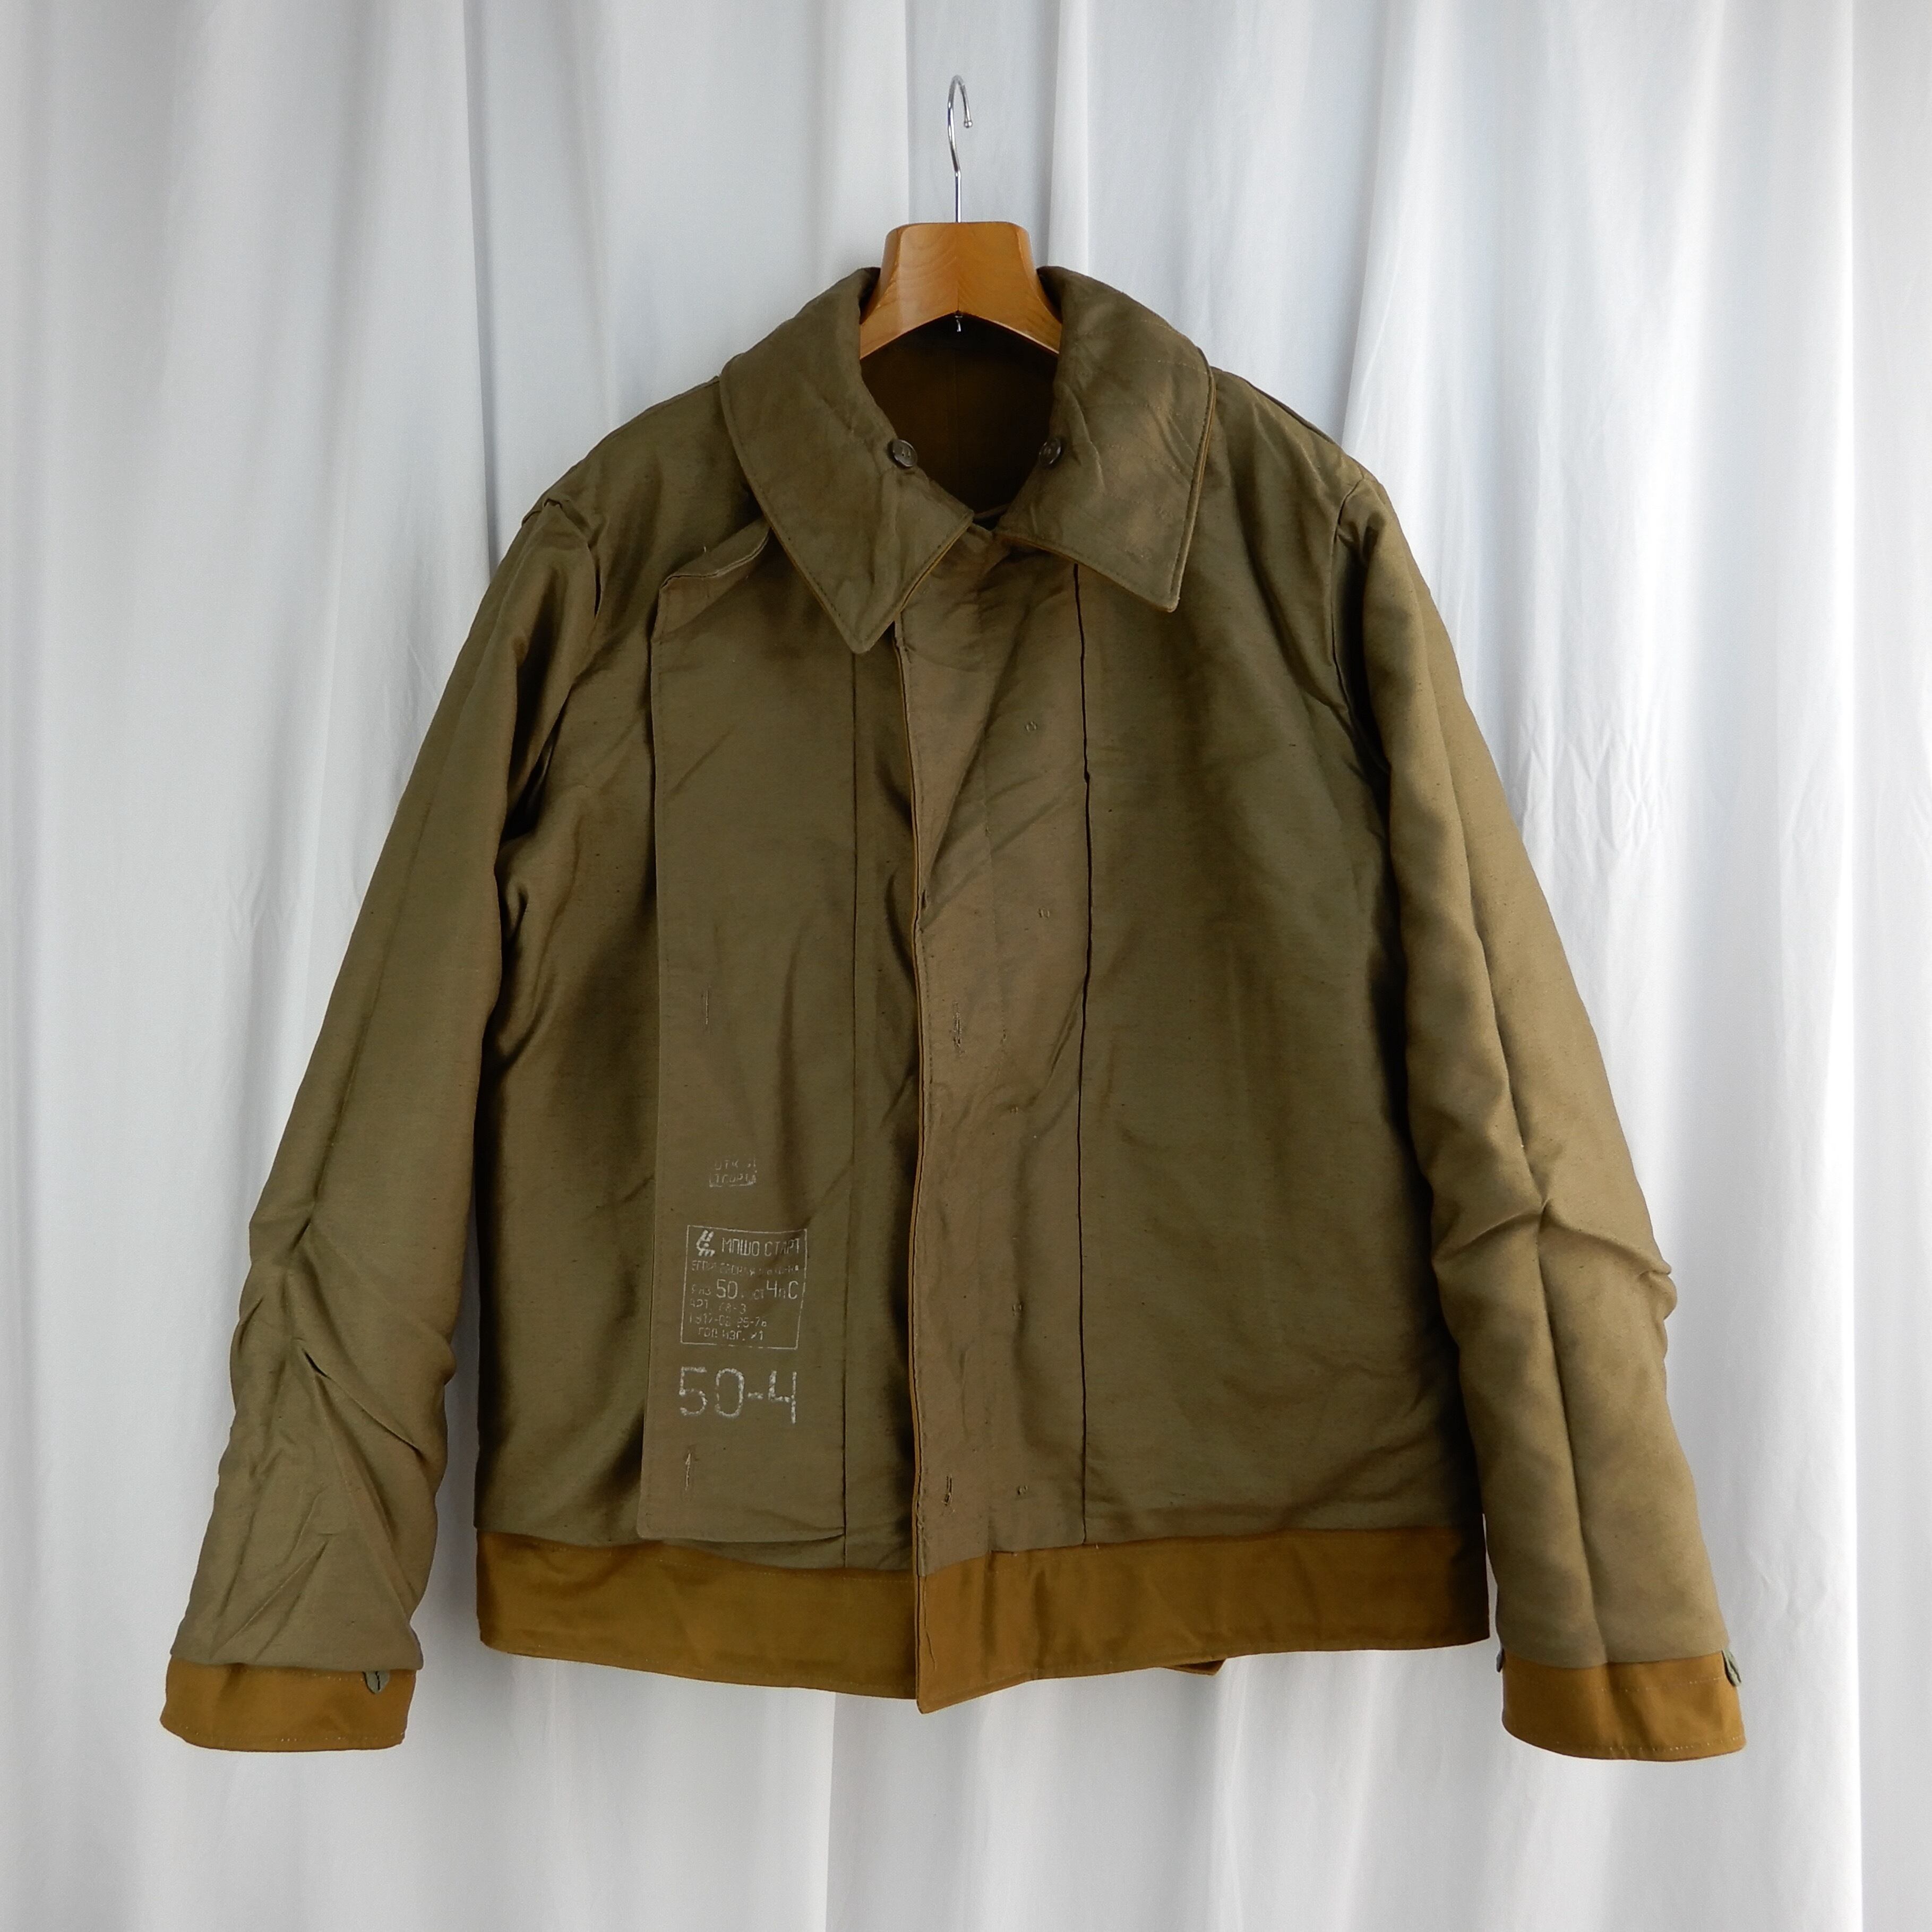 SovietArmy TANKMAN Jacket Olive 50-4 No6